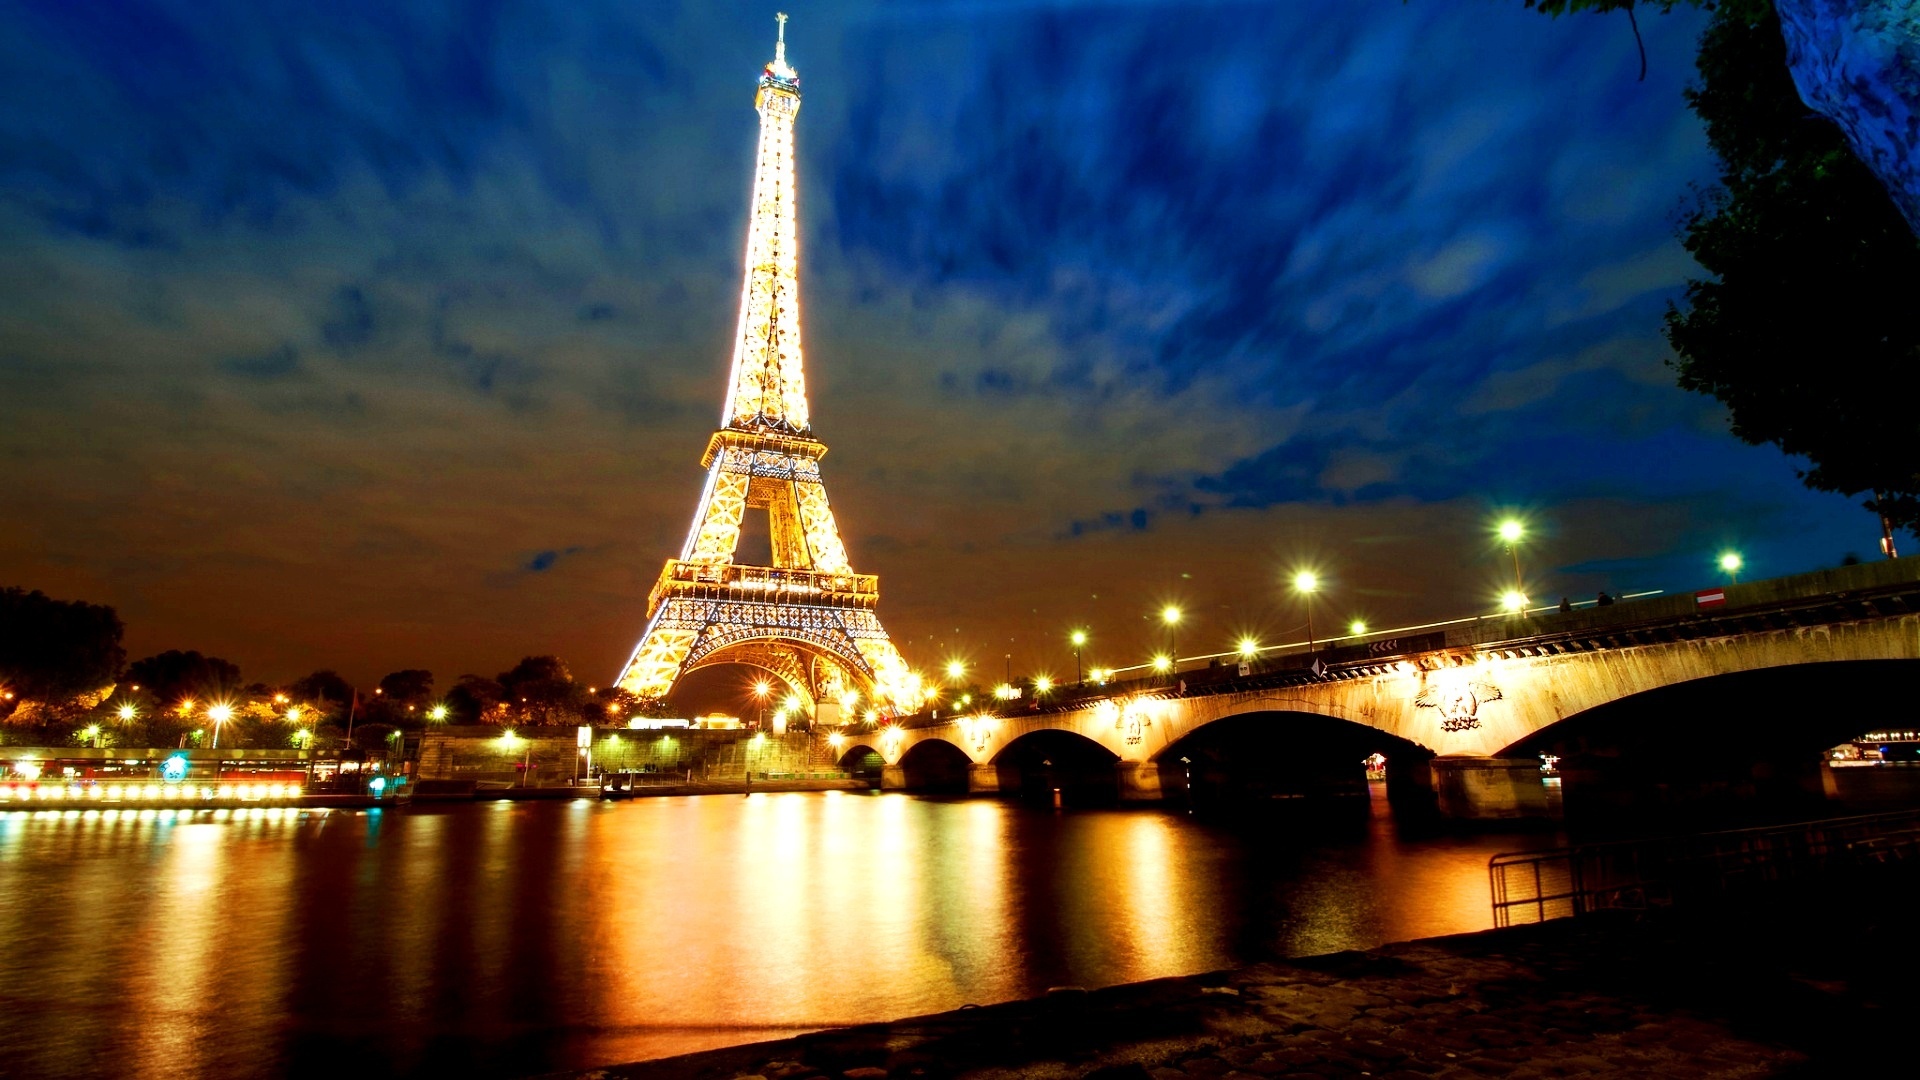 法国巴黎的埃菲尔铁塔高清壁纸图片-壁纸图片大全